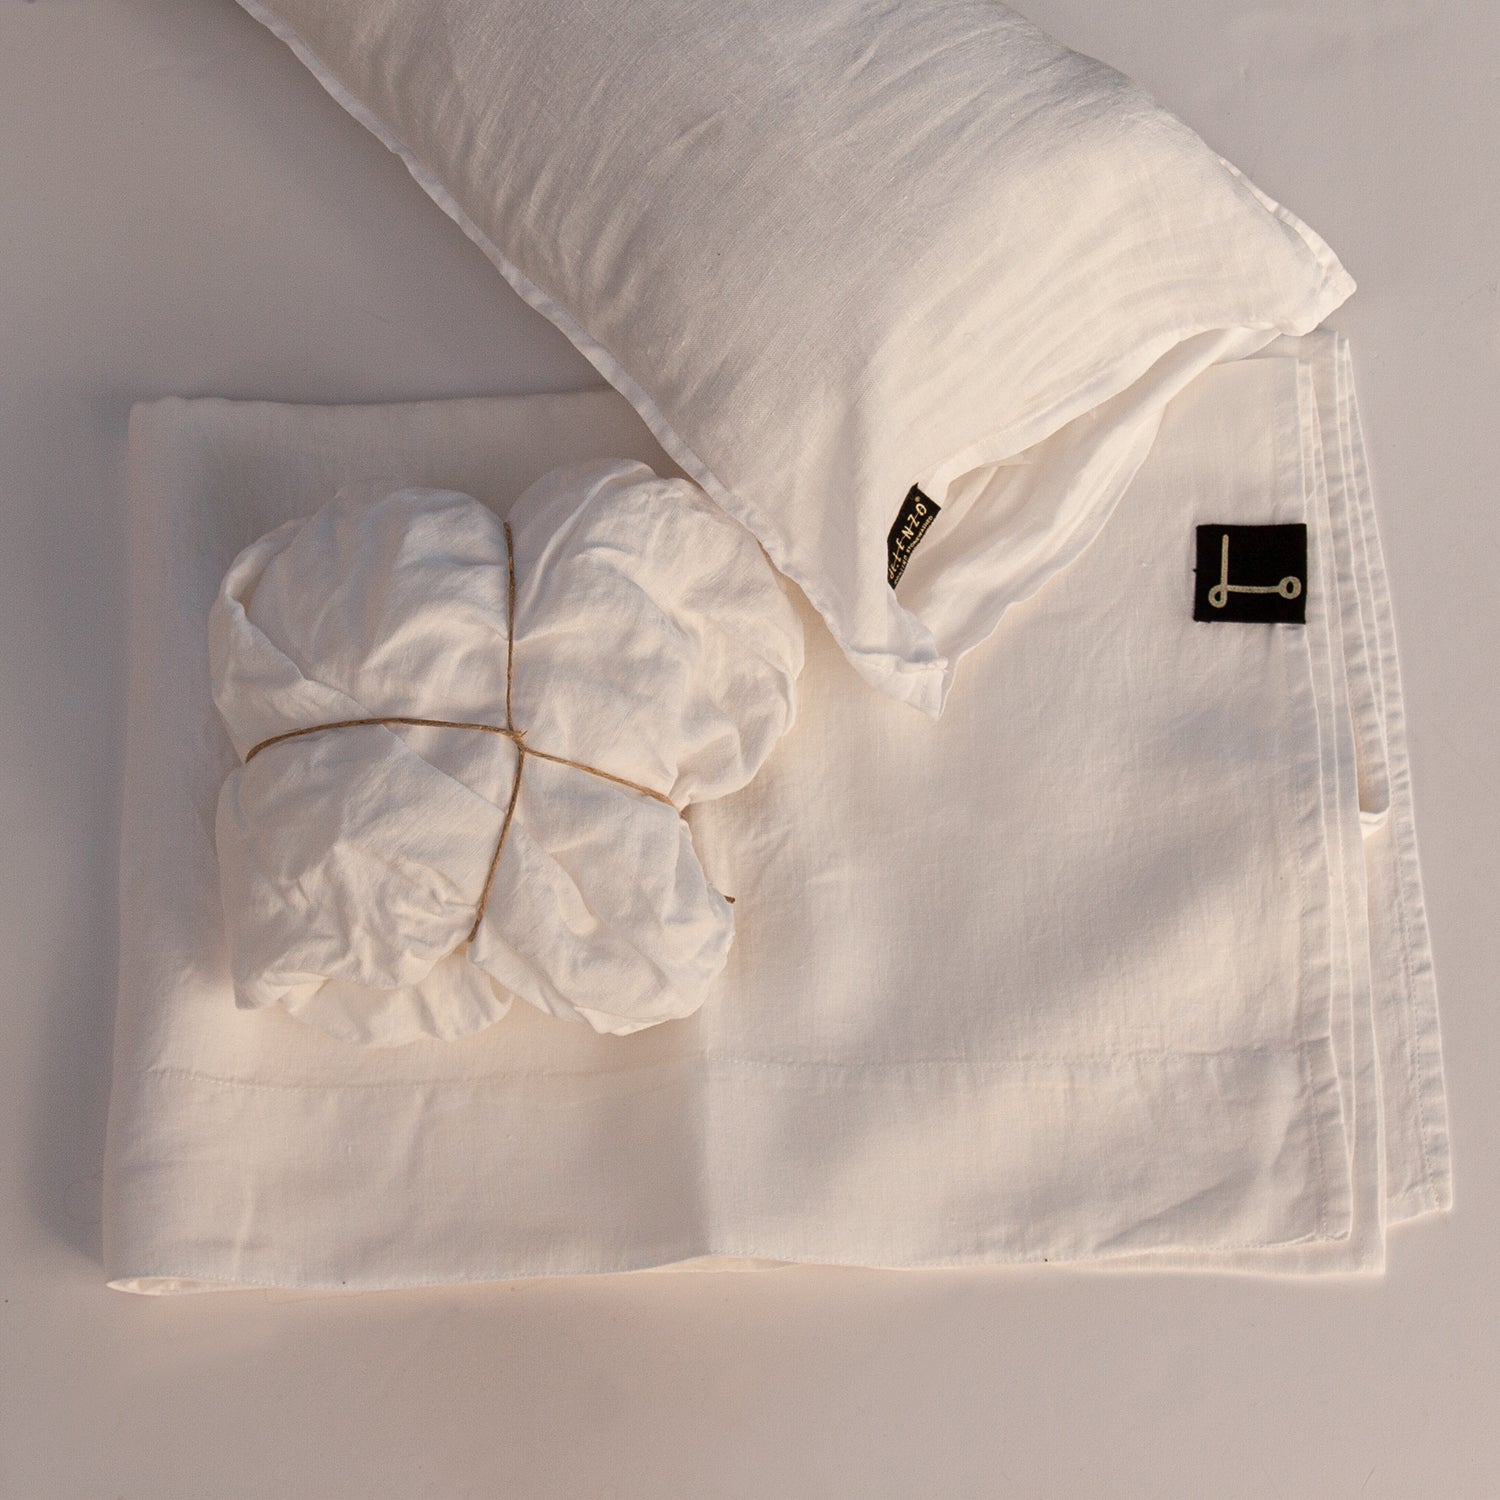 BASIC crib linen